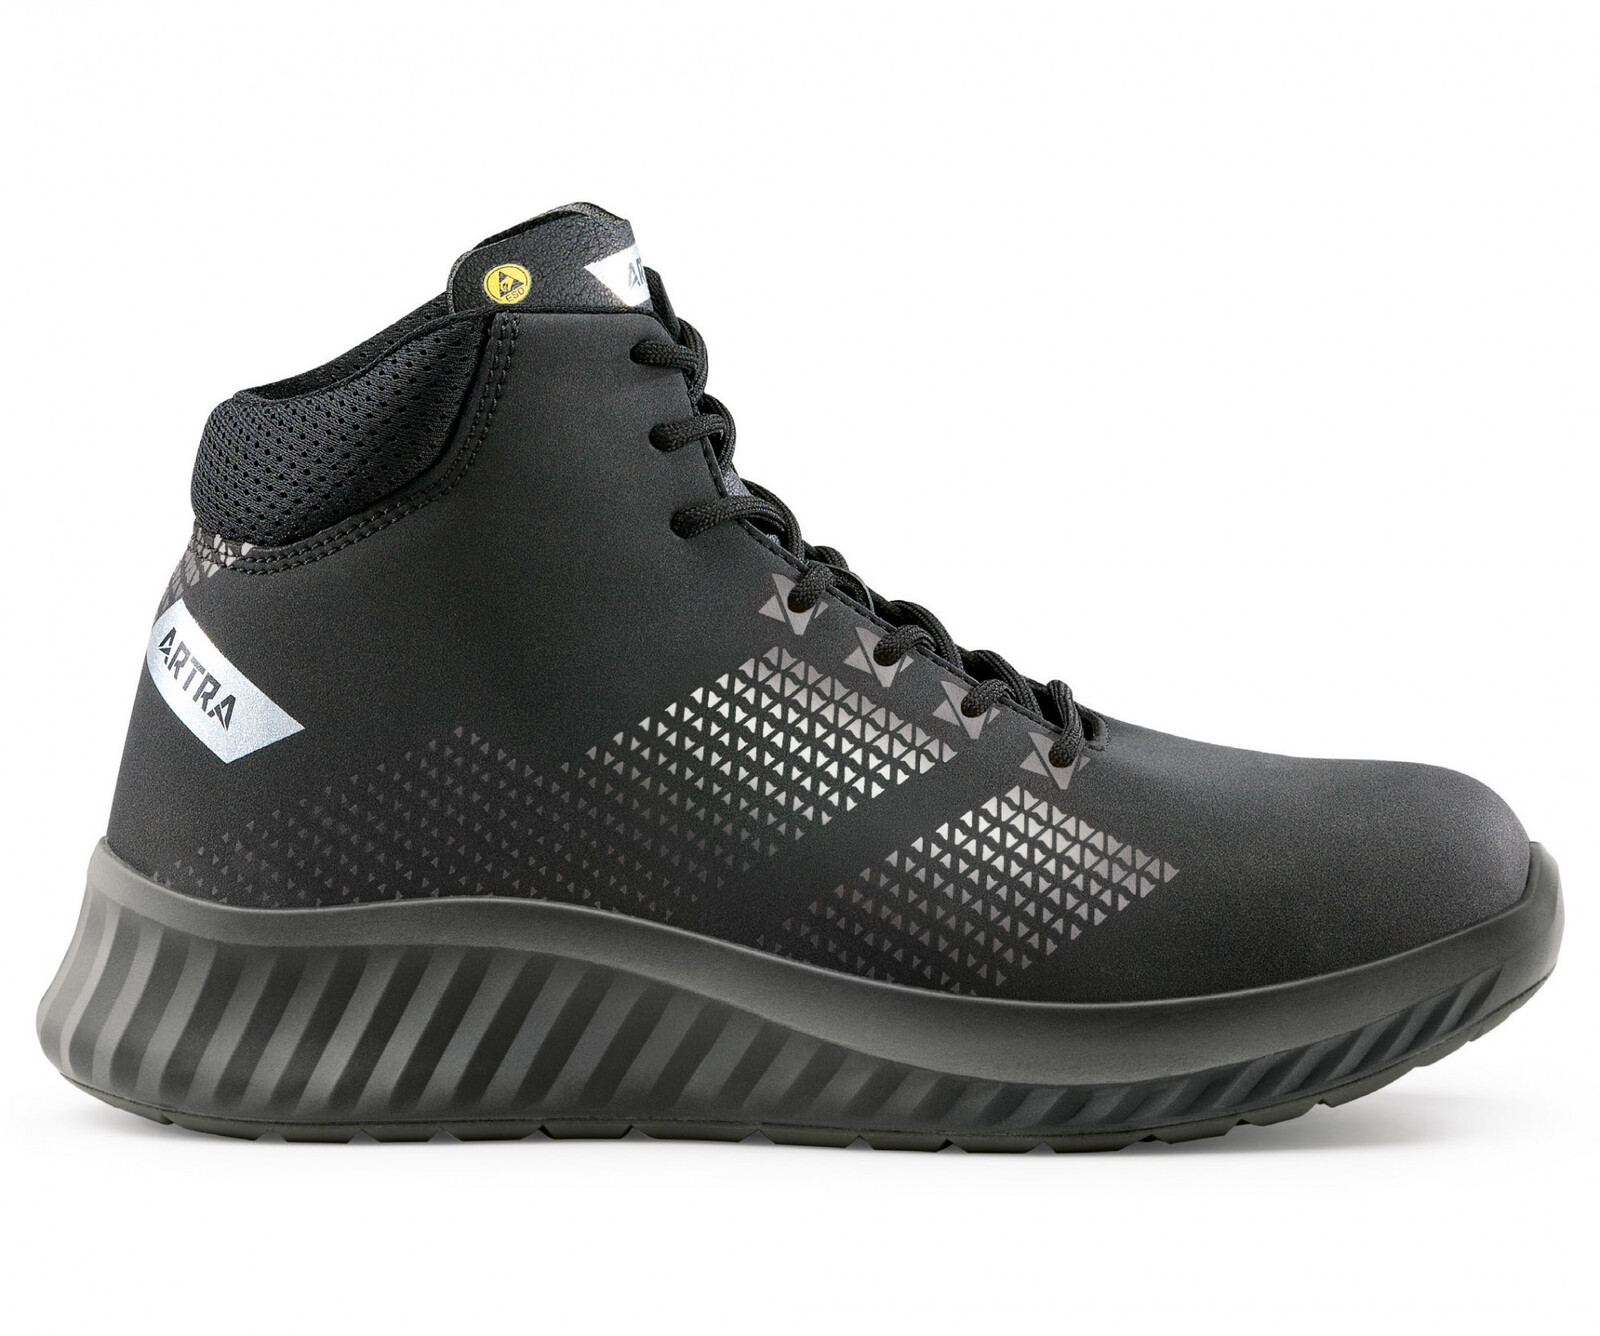 Bezpečnostná členková obuv Artra Aroserio 750 616560 S3 SRC ESD - veľkosť: 48, farba: čierna/sivá